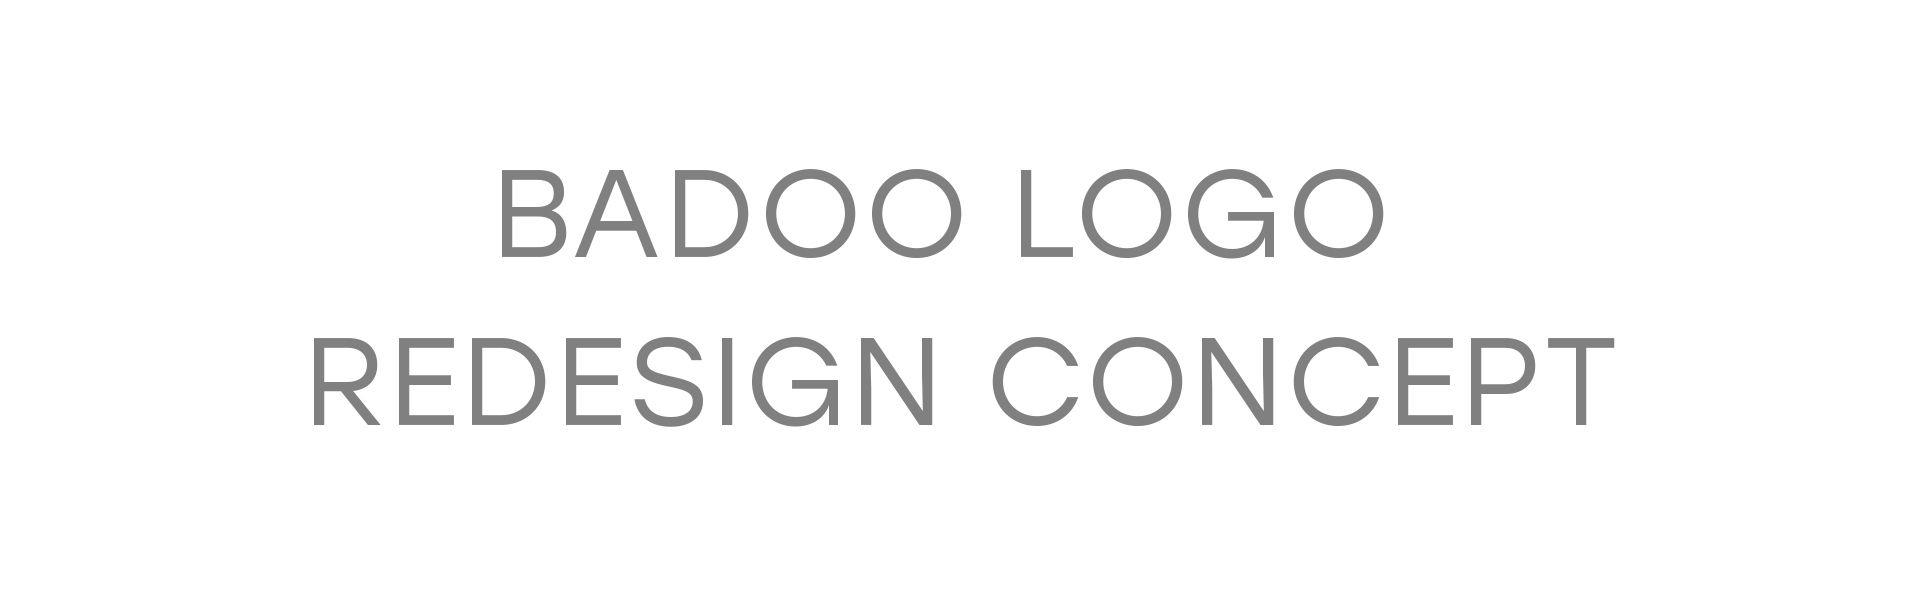 Badoo App Logo - Badoo Logo Redesign Concept